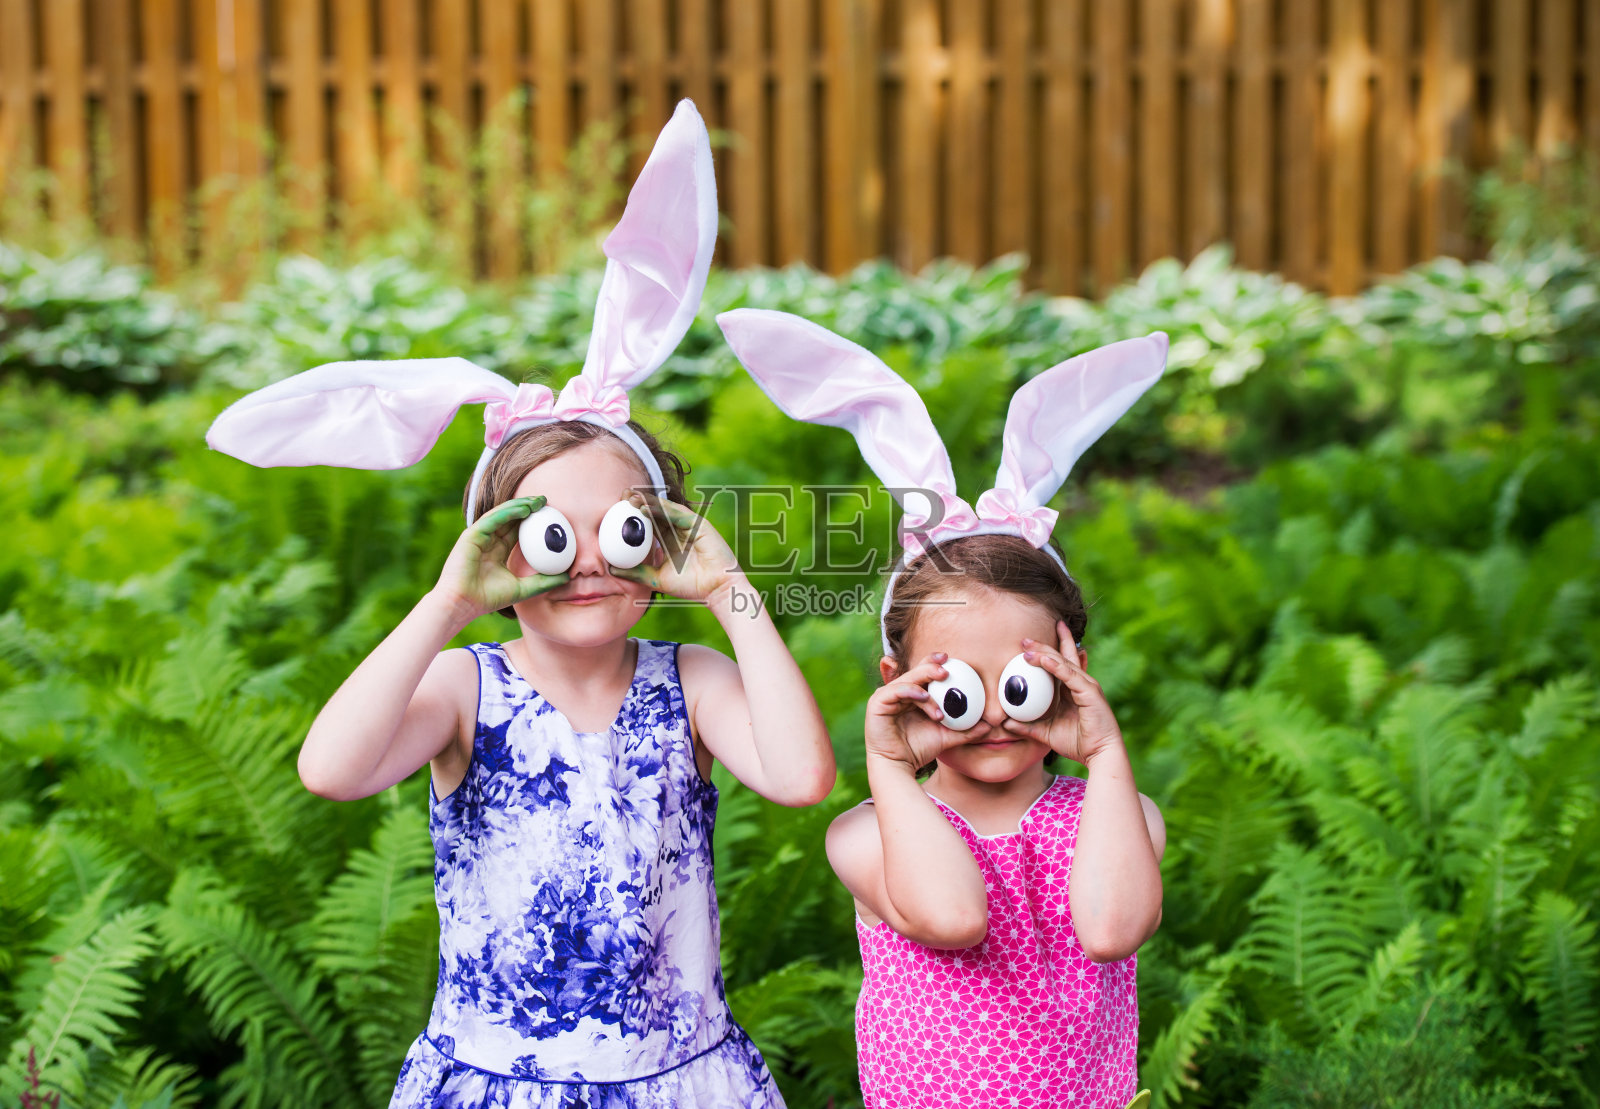 女孩戴兔耳朵和傻眼睛-近照片摄影图片